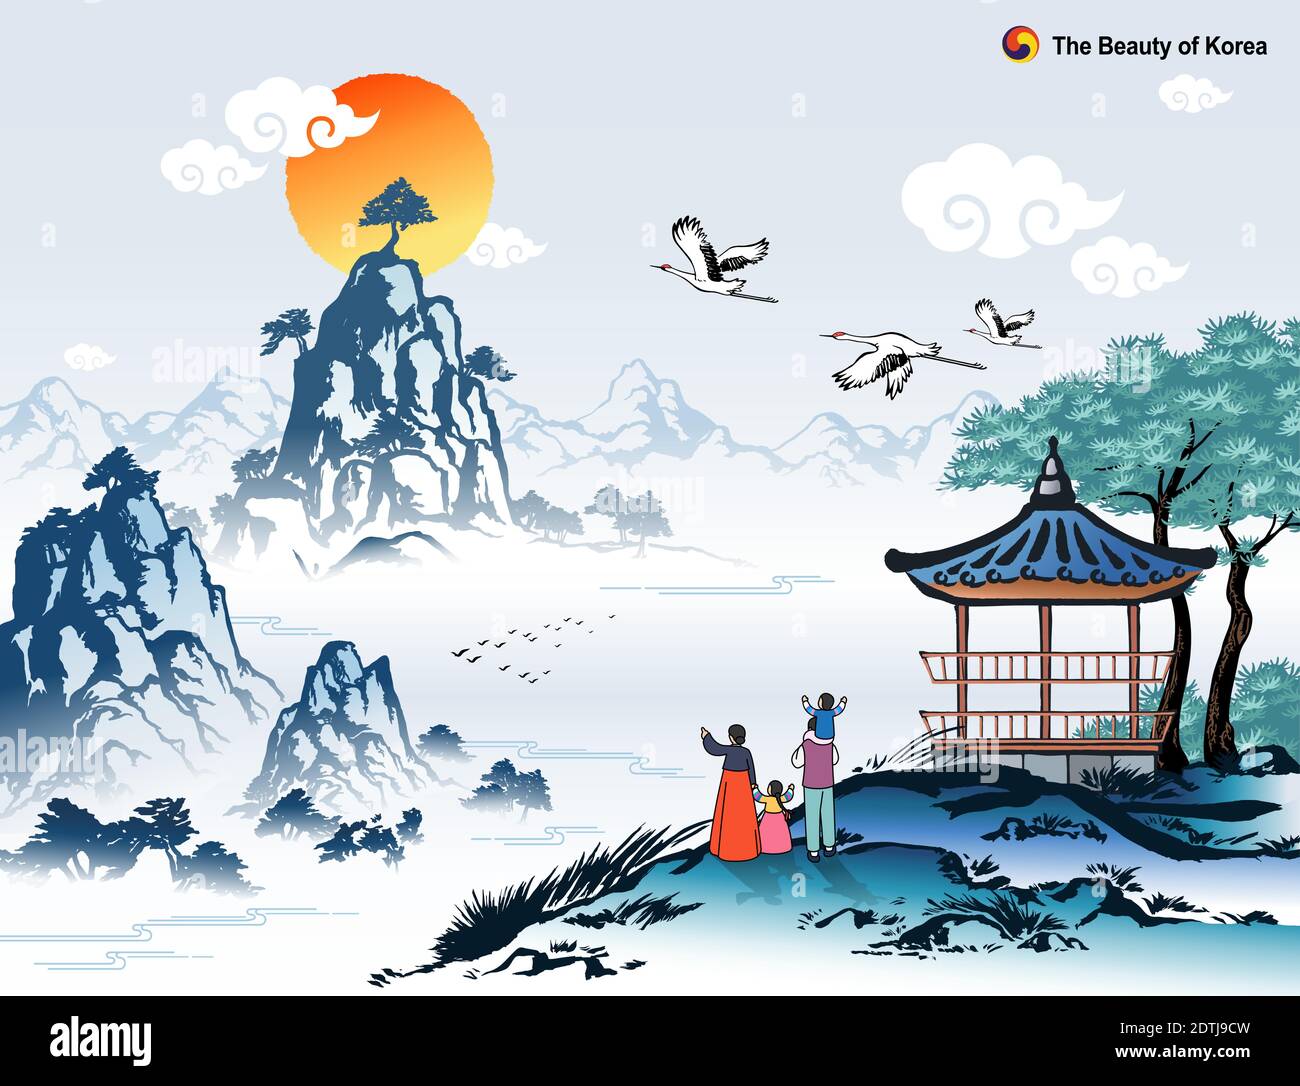 Schöne Korea, Neujahr Sonnenaufgang und natürliche Landschaft, Familie trägt traditionelle hanbok, koreanische traditionelle Malerei Vektor Illustration. Stock Vektor